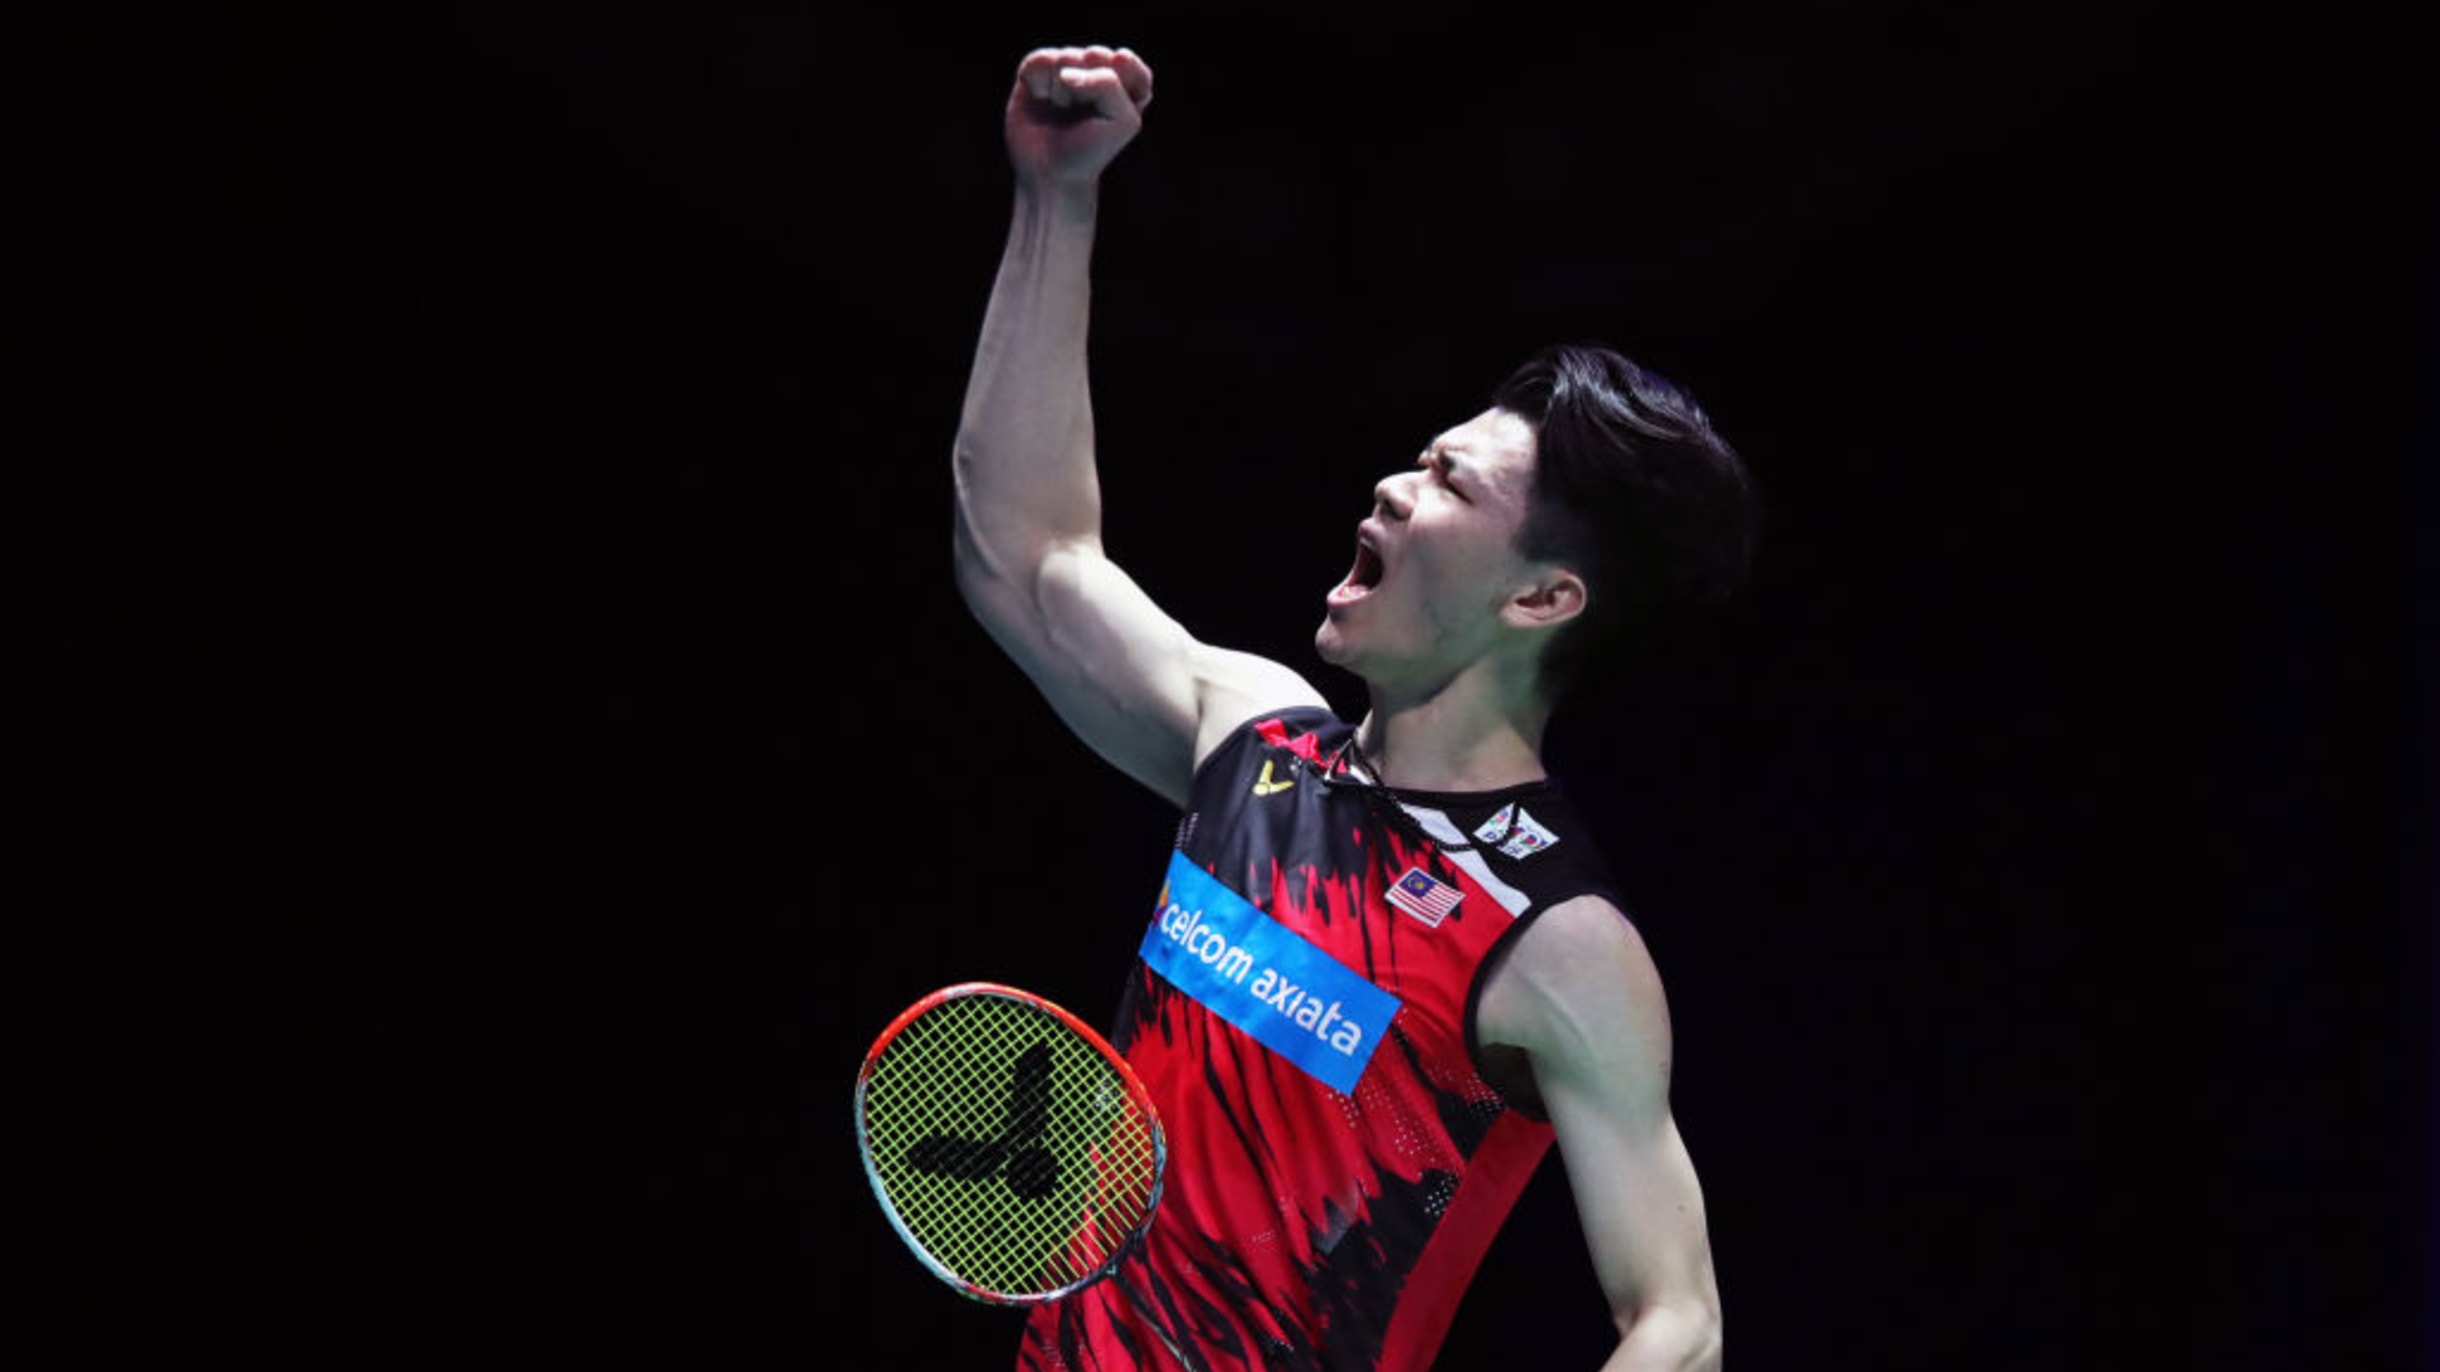 Badminton Asia Championships 2022 Finals featuring Lee Zii Jia, Jonatan Christie, Wang Zhi Yi and Yamaguchi Akane